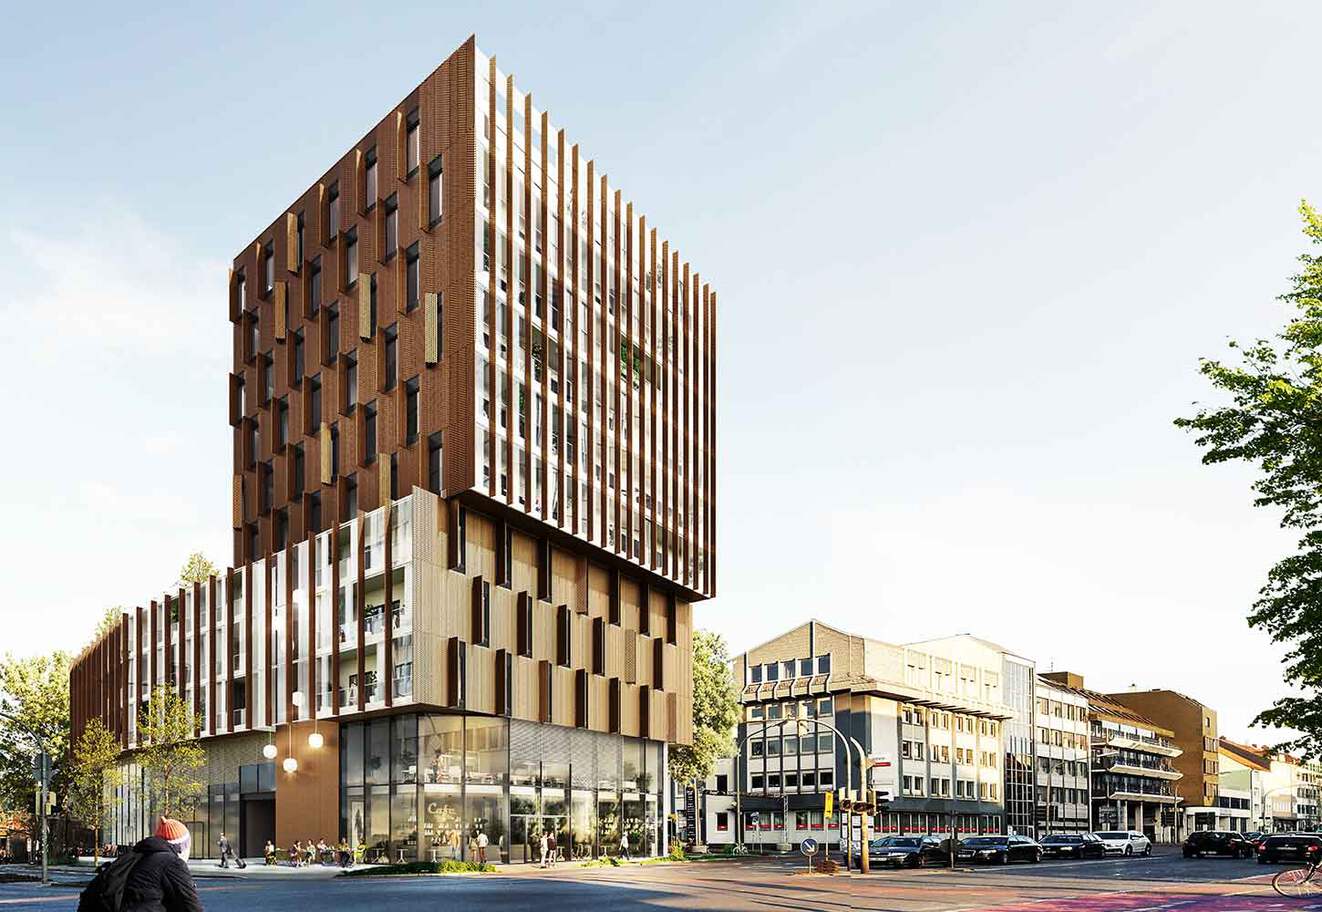 So soll das geplante Wohn- und Geschäftshaus am Berliner Platz aussehen. / Entwurf: Schnoklake Betz Dömer Architekten